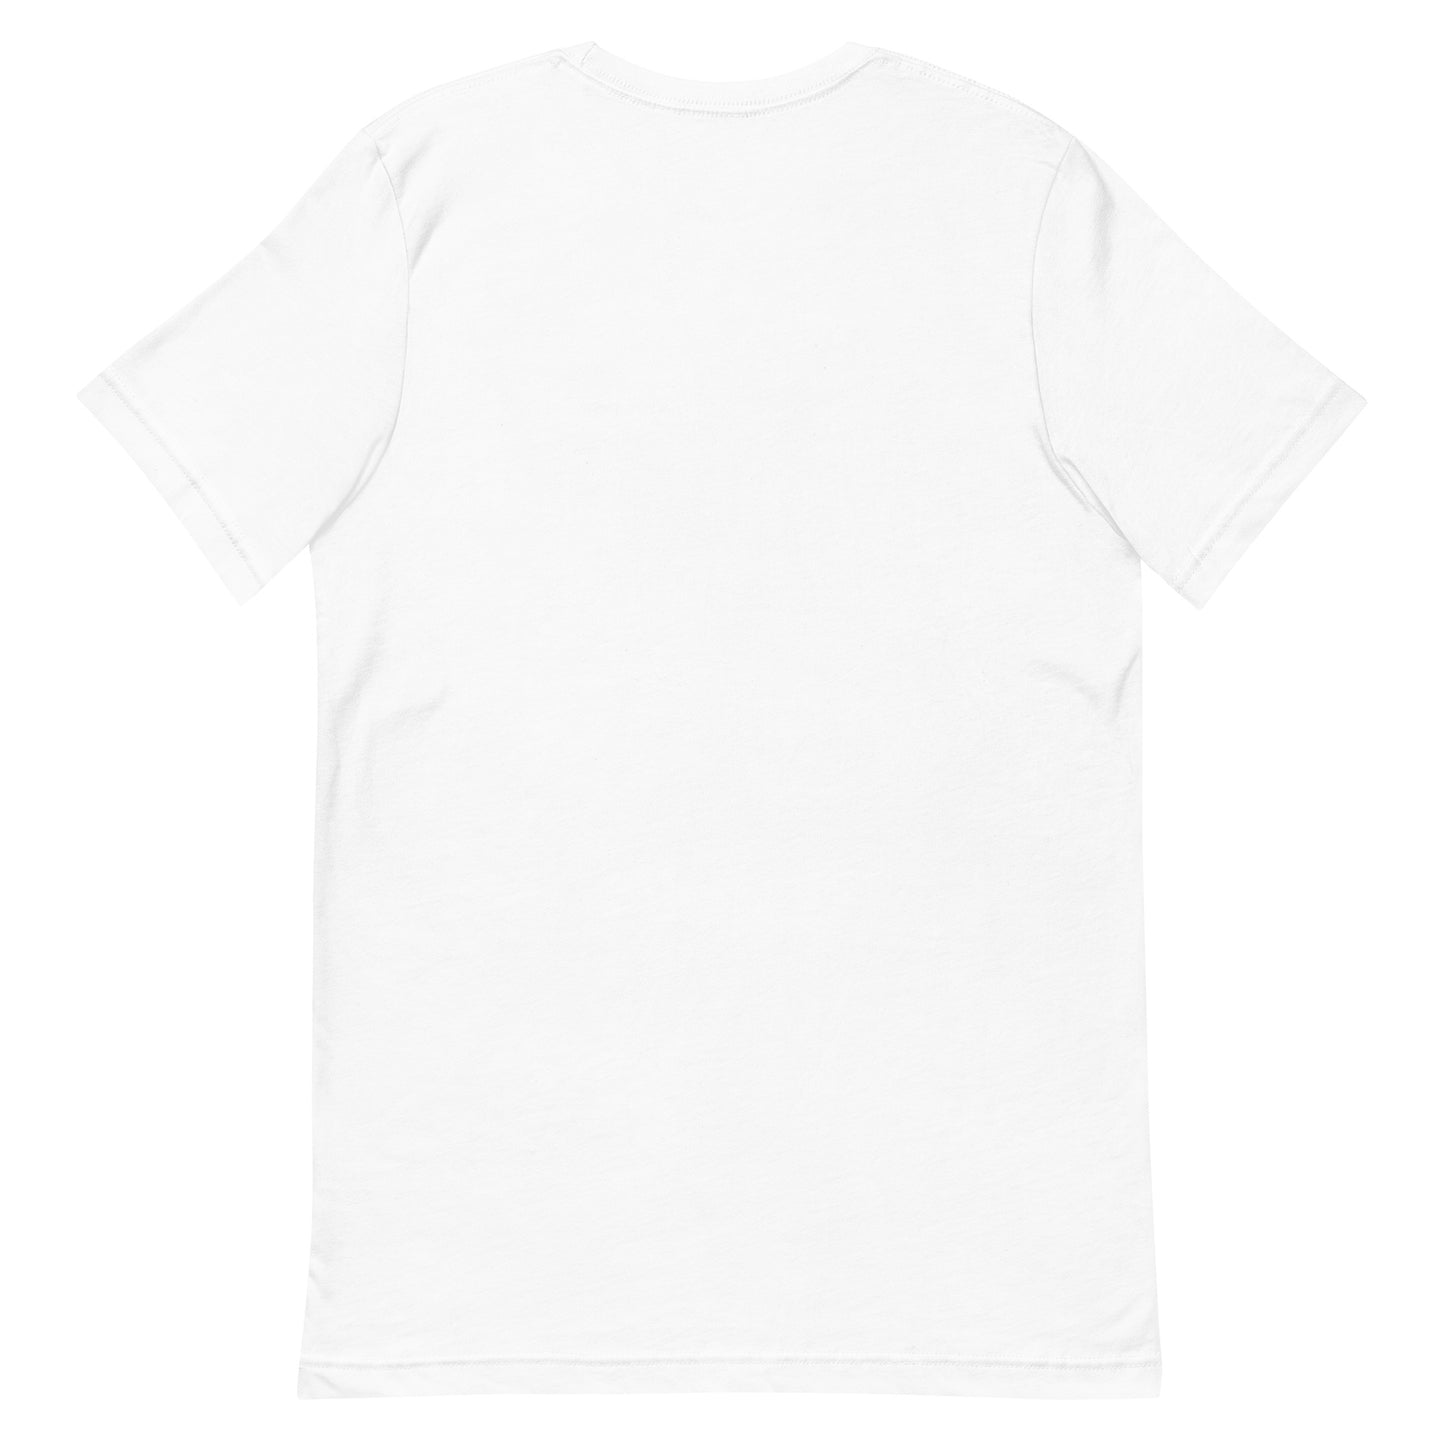 Unisex t-shirt "30 TSUKI MAWASHI" White